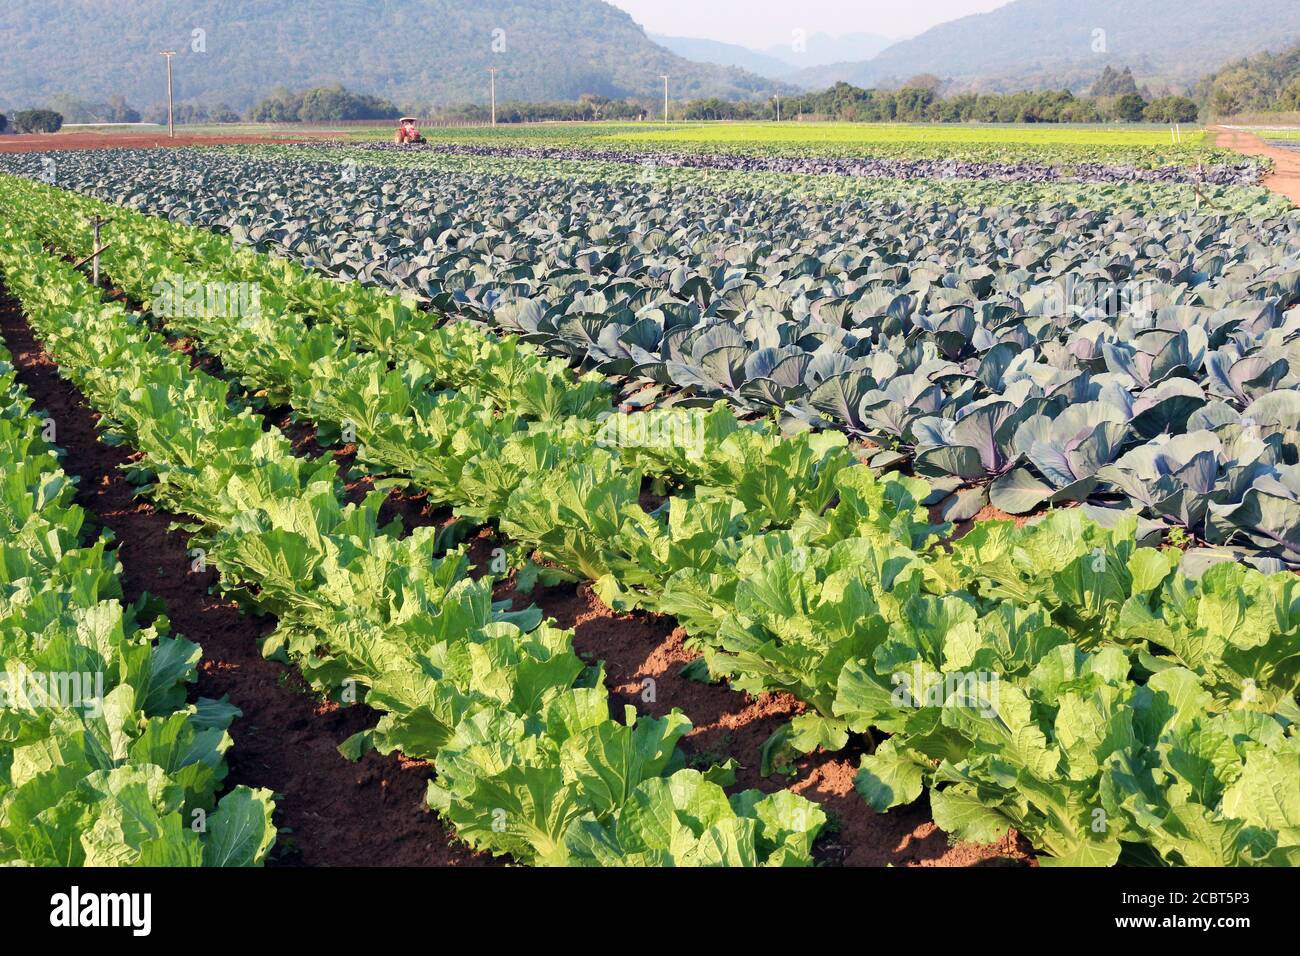 Agroindustria. Plantaciones de verduras y alimentos para el mundo. Foto de stock